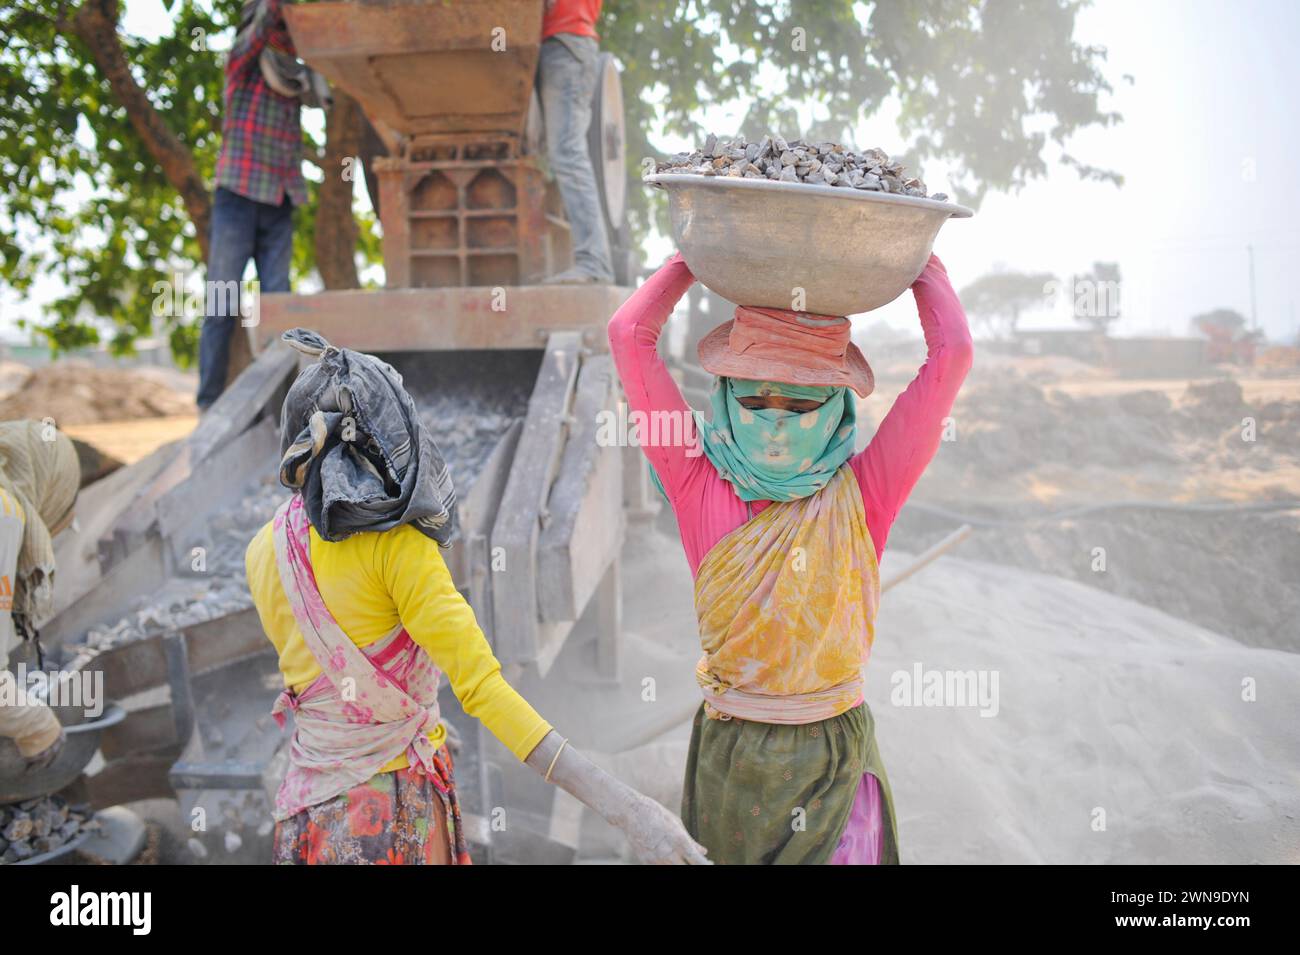 Männliche und weibliche Arbeiter brechen LC-Steine mit einer Brechmaschine in der Gegend von Bholaganj, bekannt als „Steinstaat“ von Sylhet Companyganj Upazila. Diese Arbeiter, deren Gesundheit gefährdet ist, verdienen am Ende des Tages 500-600 Taka. Rund 2000 Arbeiter sind in mehr als 200 Brechmaschinen beschäftigt, und jeden Tag werden Steine im Wert von 3-5 Mrd. Rupien gebrochen. Sylhet-Bangladesch. Stockfoto